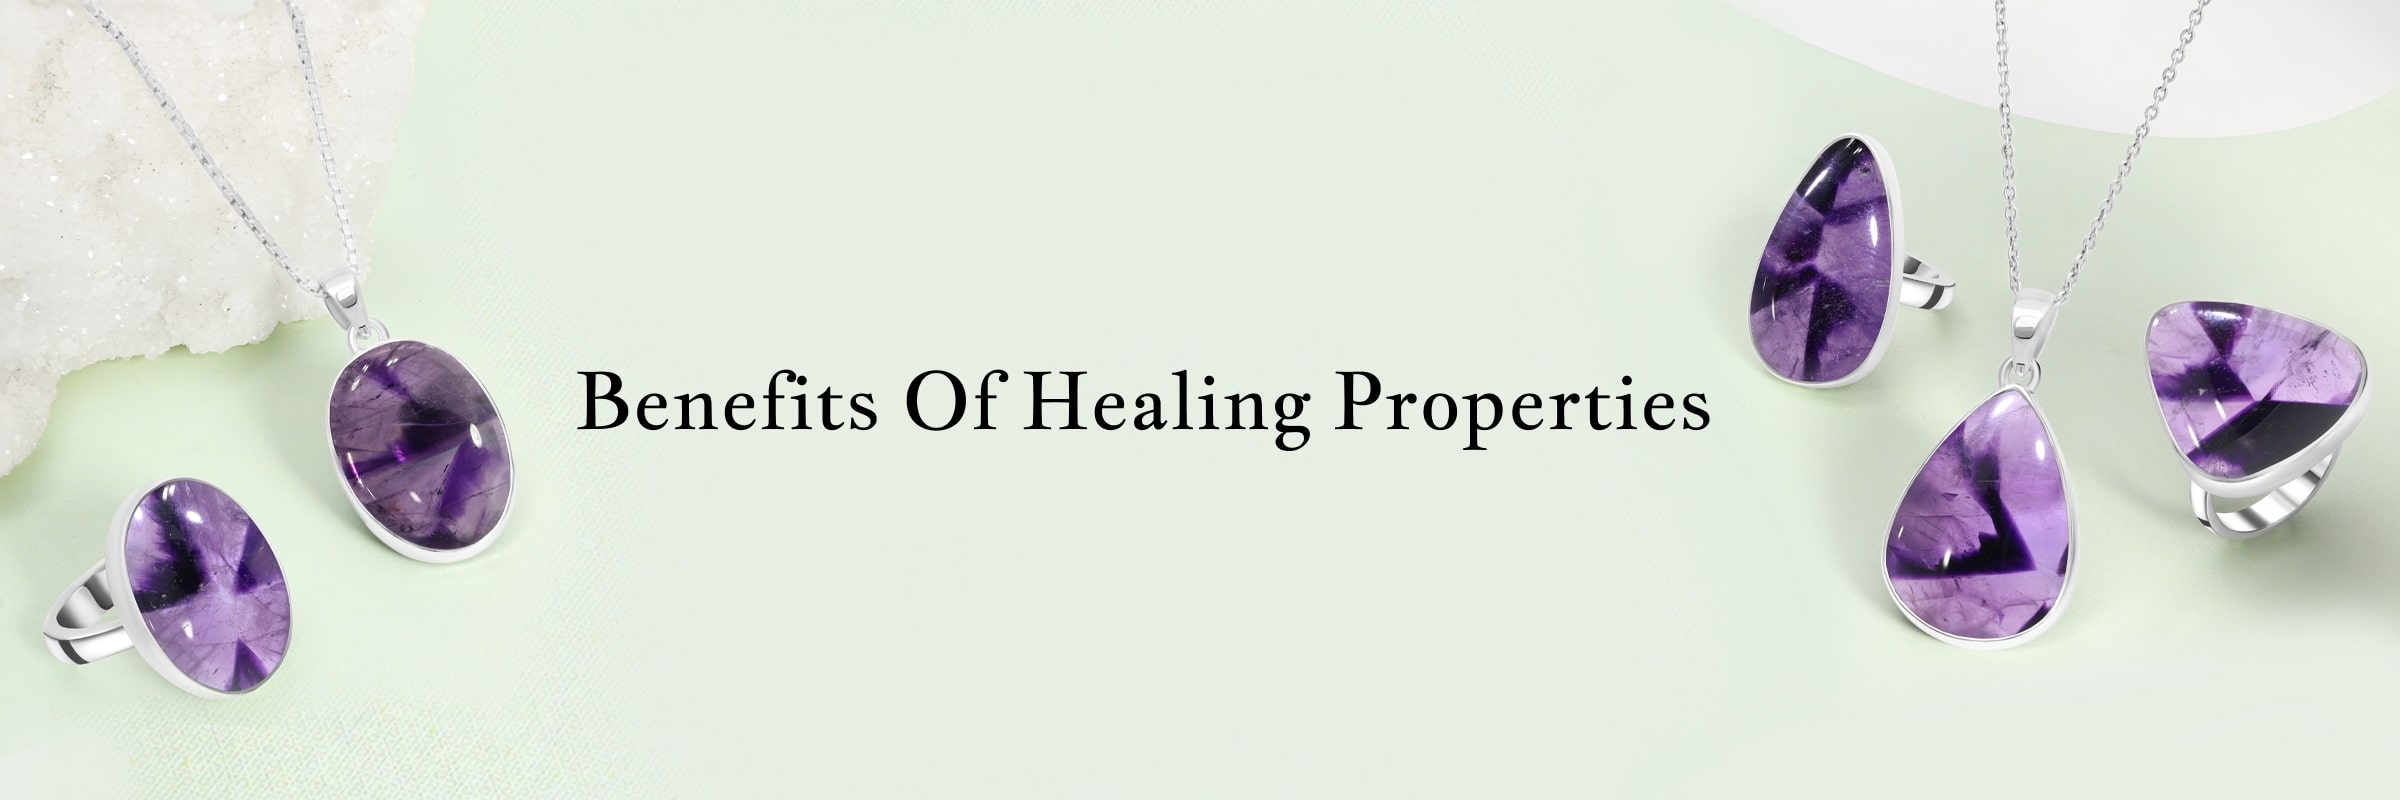 Healing properties and benefits